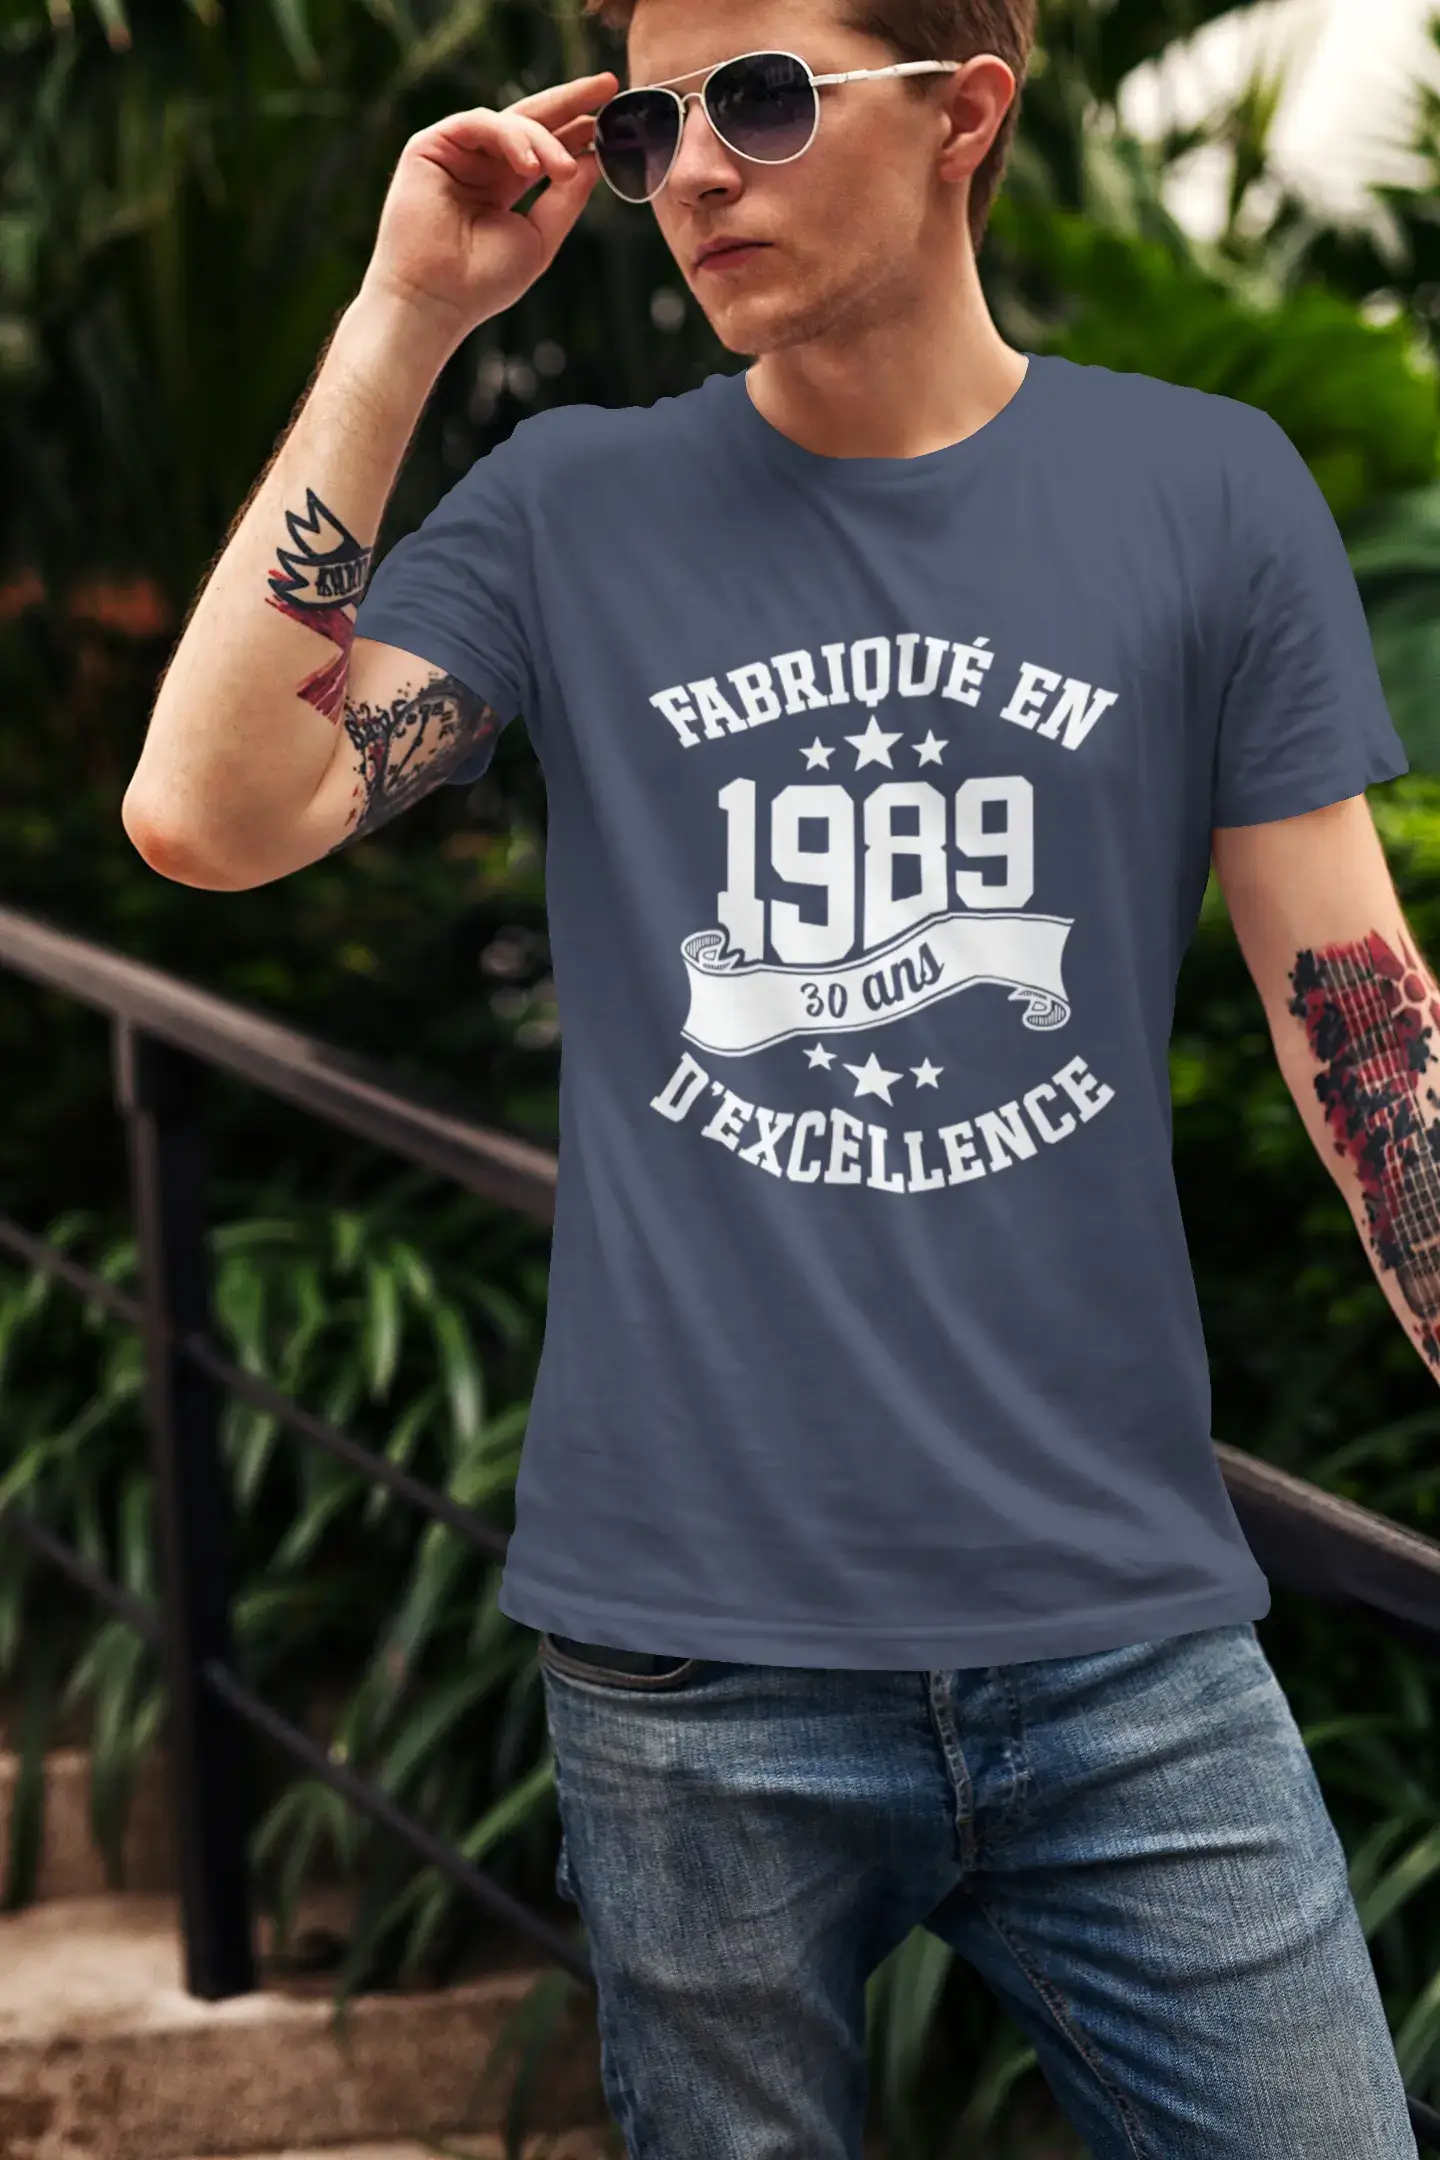 ULTRABASIC – Hergestellt im Jahr 1989, 30 Jahre alt. Original Unisex T-Shirt Royal